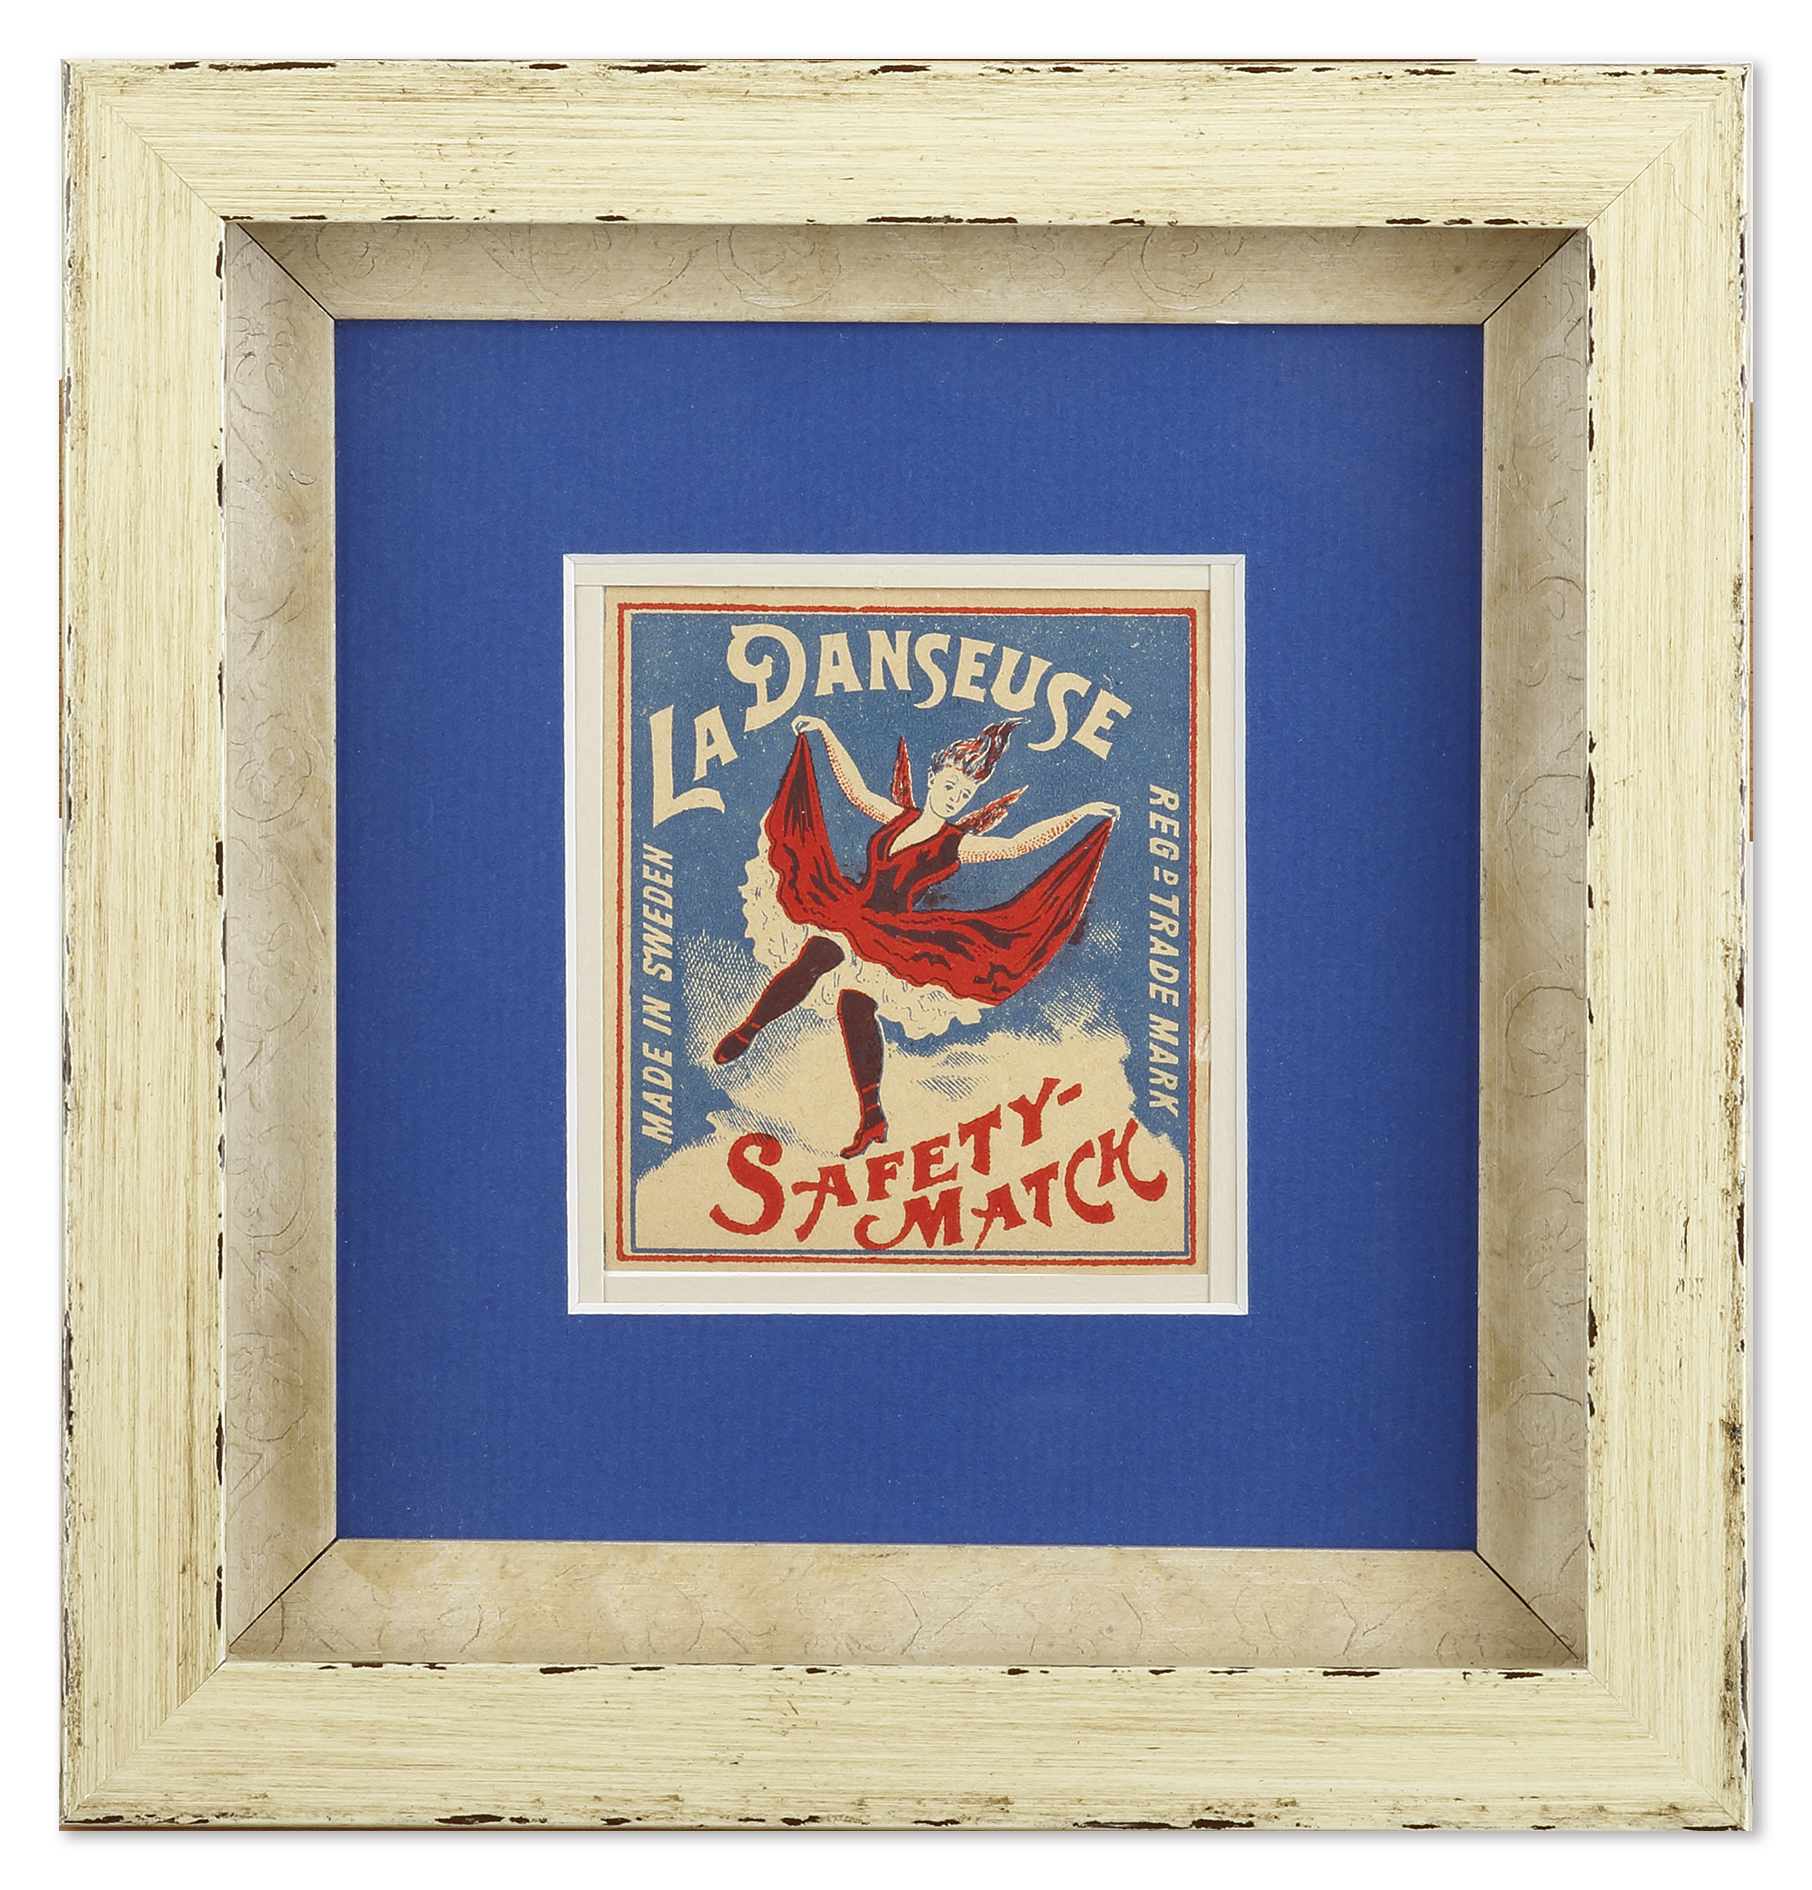 La Danseuse - Antique Print from 1900